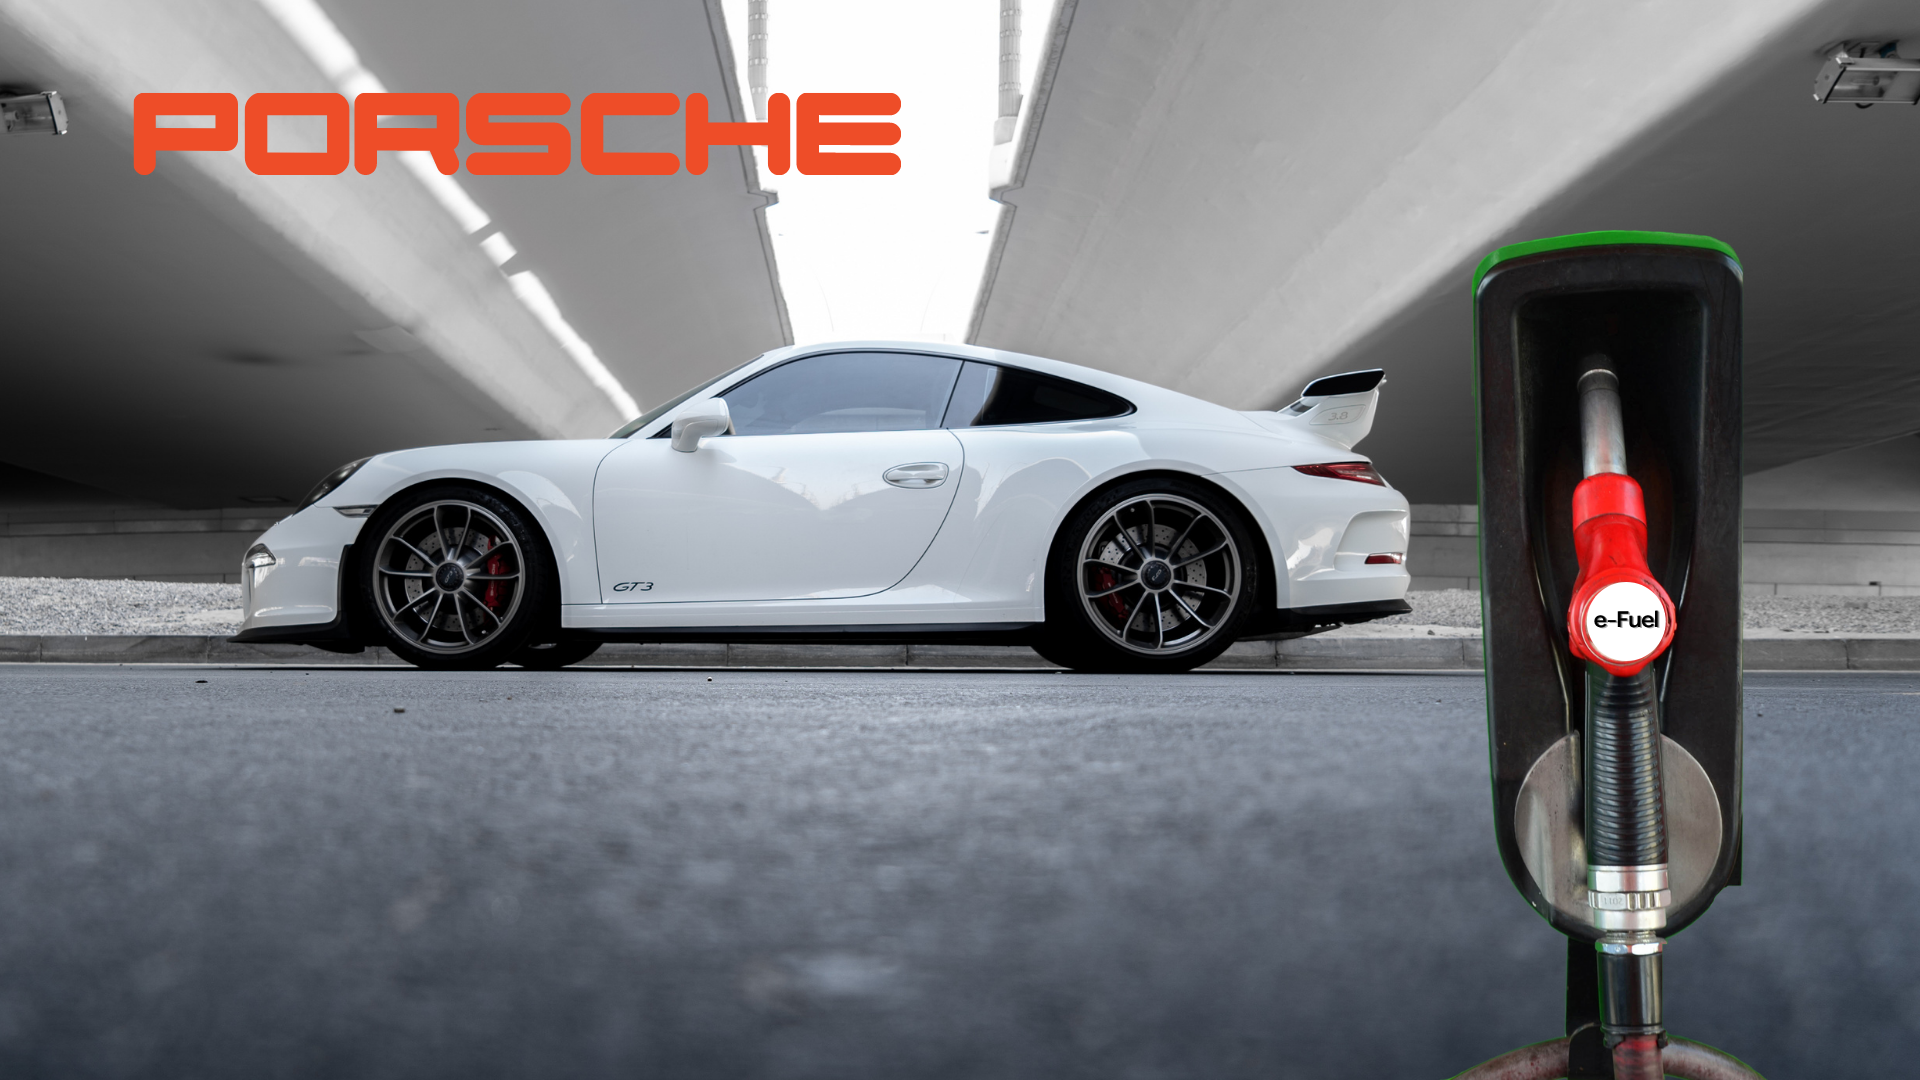 Porsche’s eFuel Tech is Balancing Performance With a Greener World